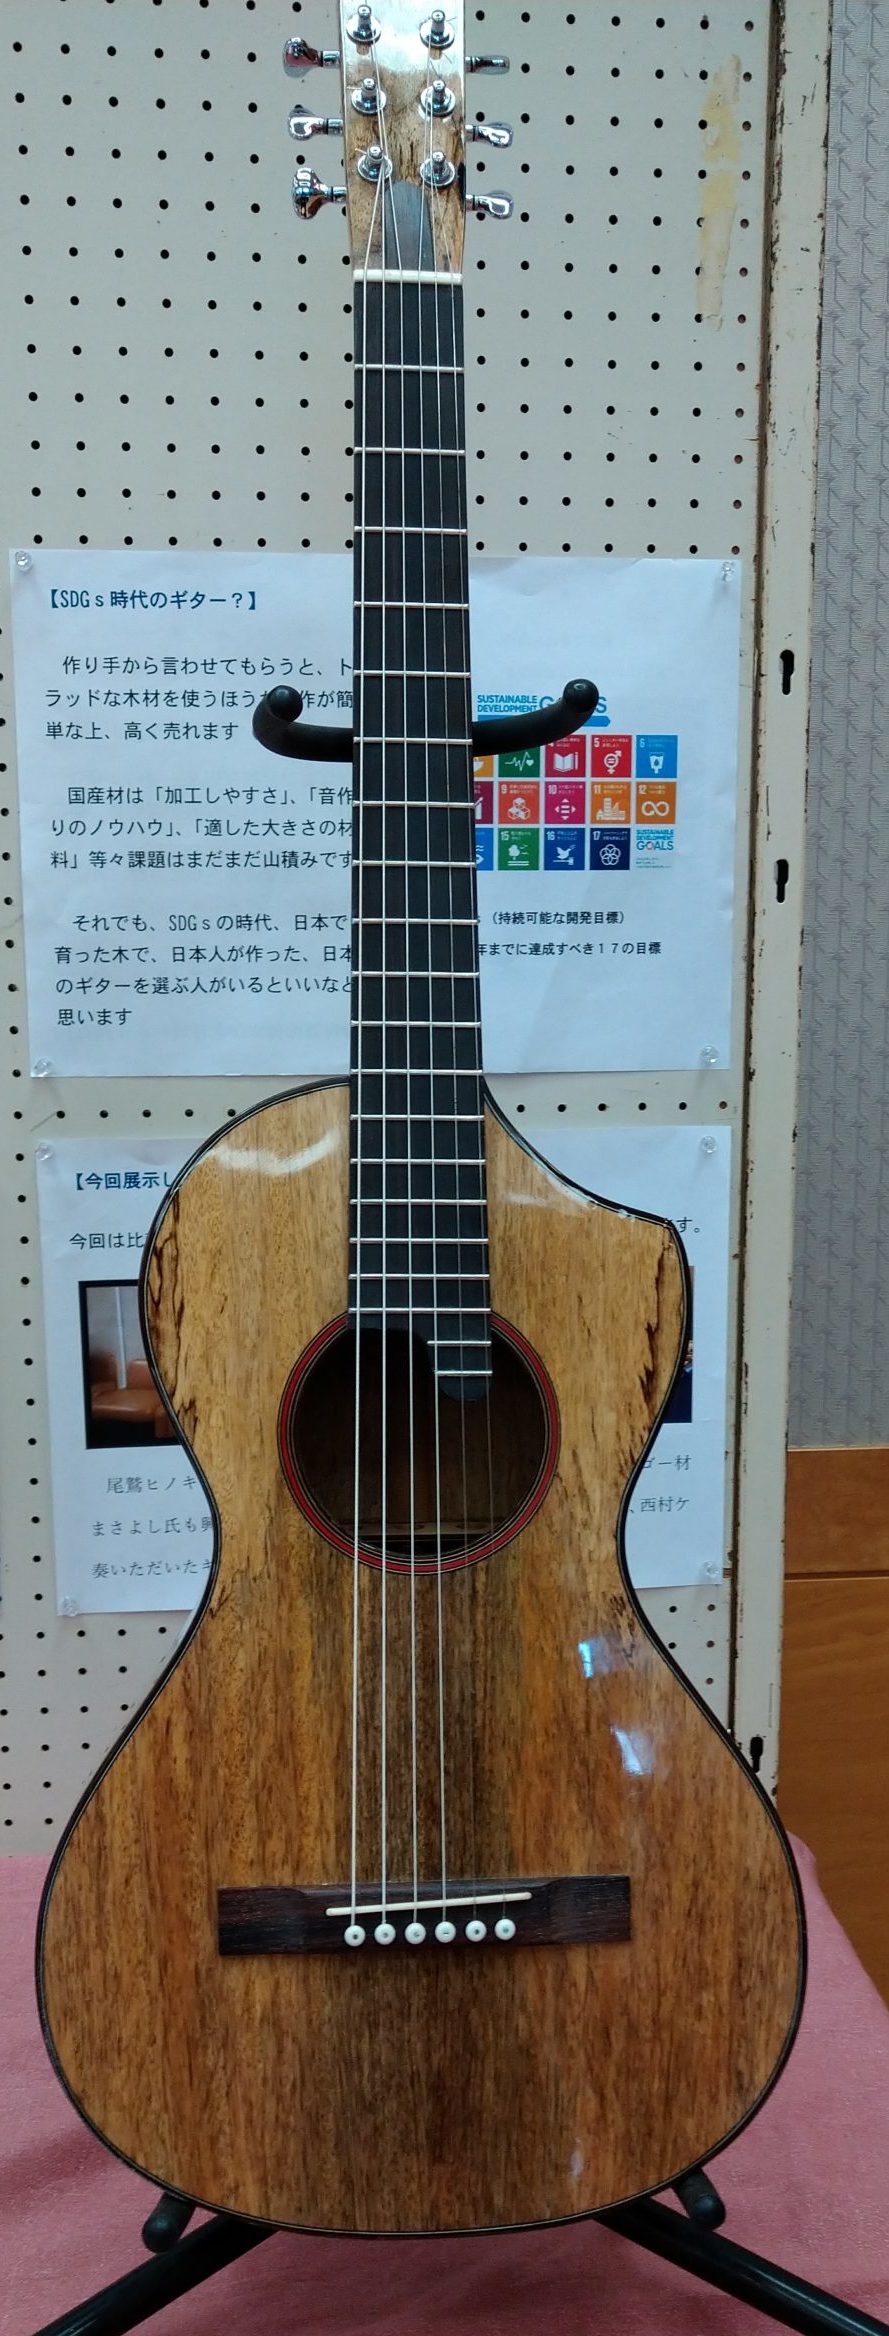 注文(order) | 松ギター堂 -matsu guitars-